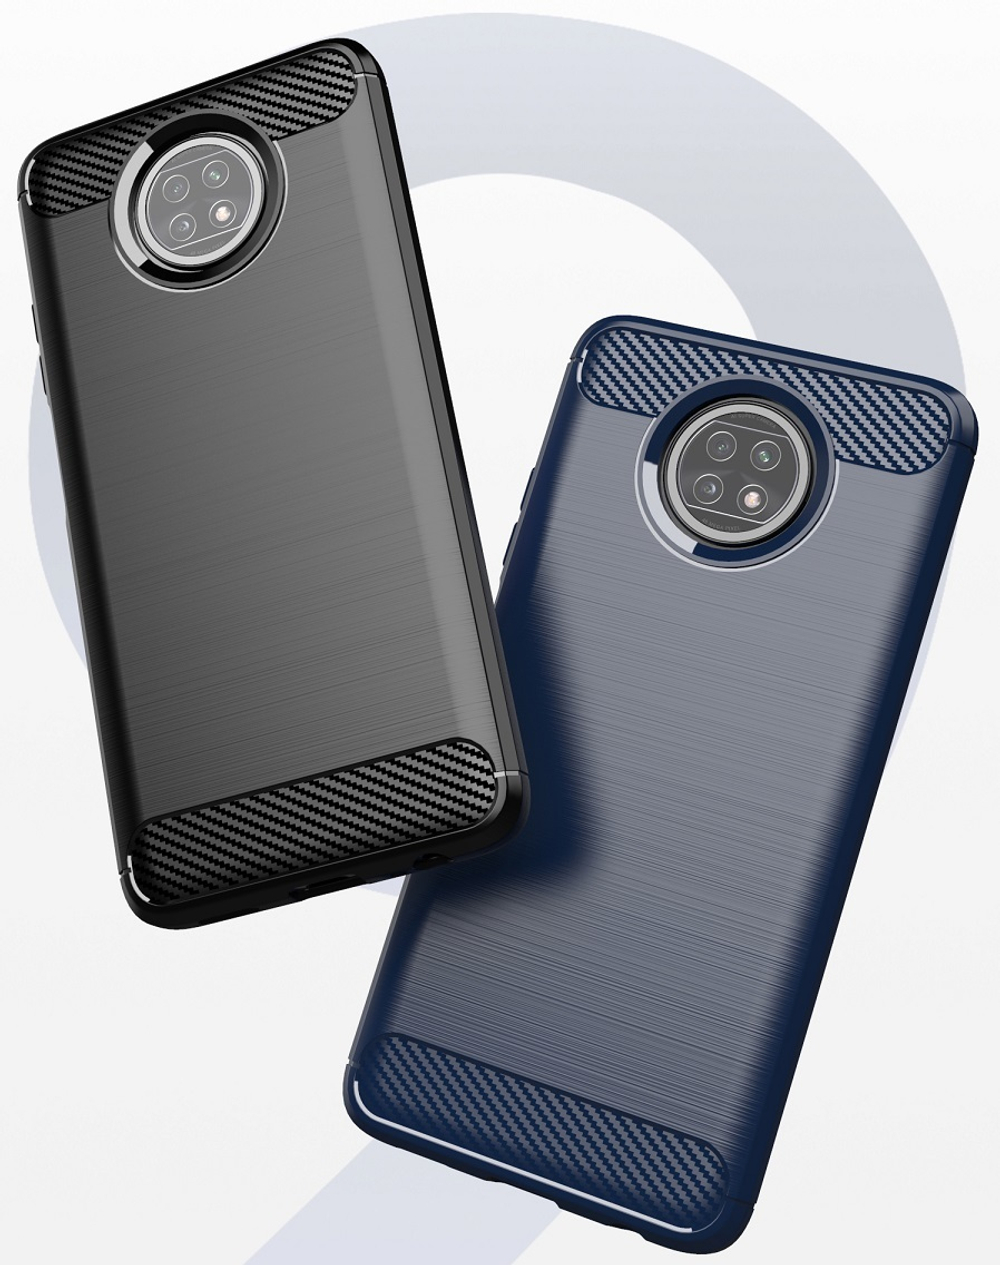 Чехол для телефона Xiaomi Redmi Note 9T, серия Carbon, темно-синий цвет от Caseport